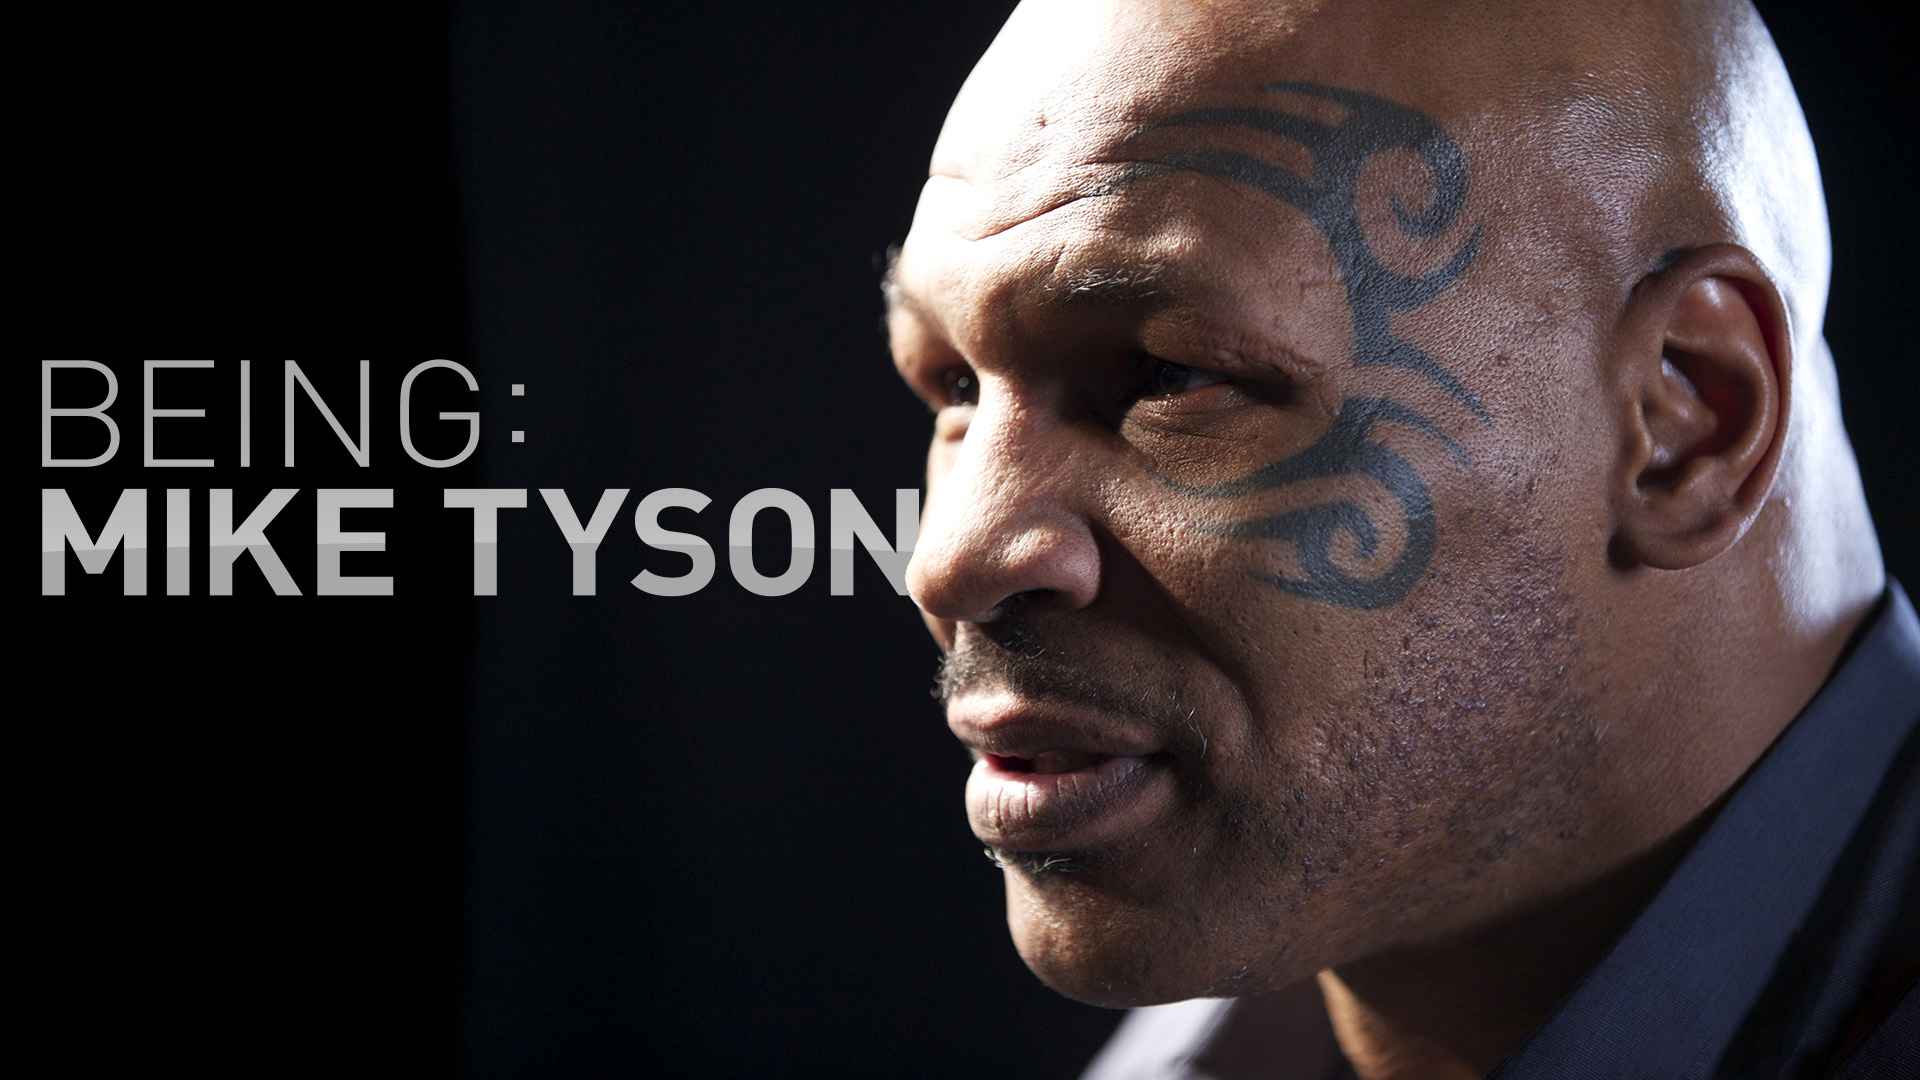 マイク タイソンに密着したドキュメンタリー Being Mike Tyson Foxスポーツ エンターテイメントで日本独占放送 Fox Sports ジャパン株式会社のプレスリリース